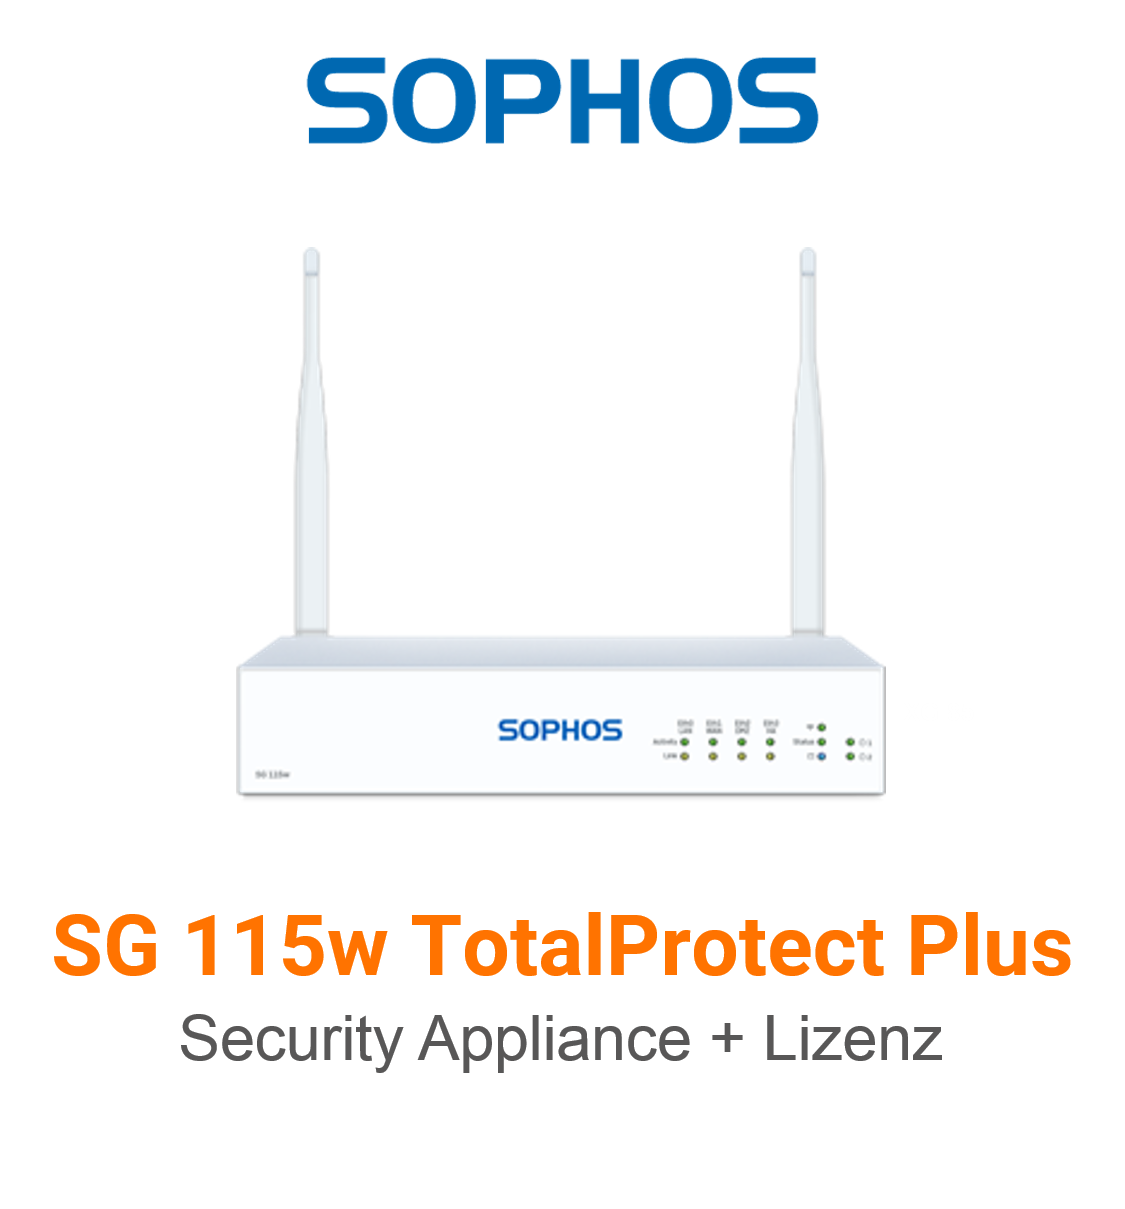 Sophos SG 115w TotalProtect Plus Bundle (Hardware + Lizenz)